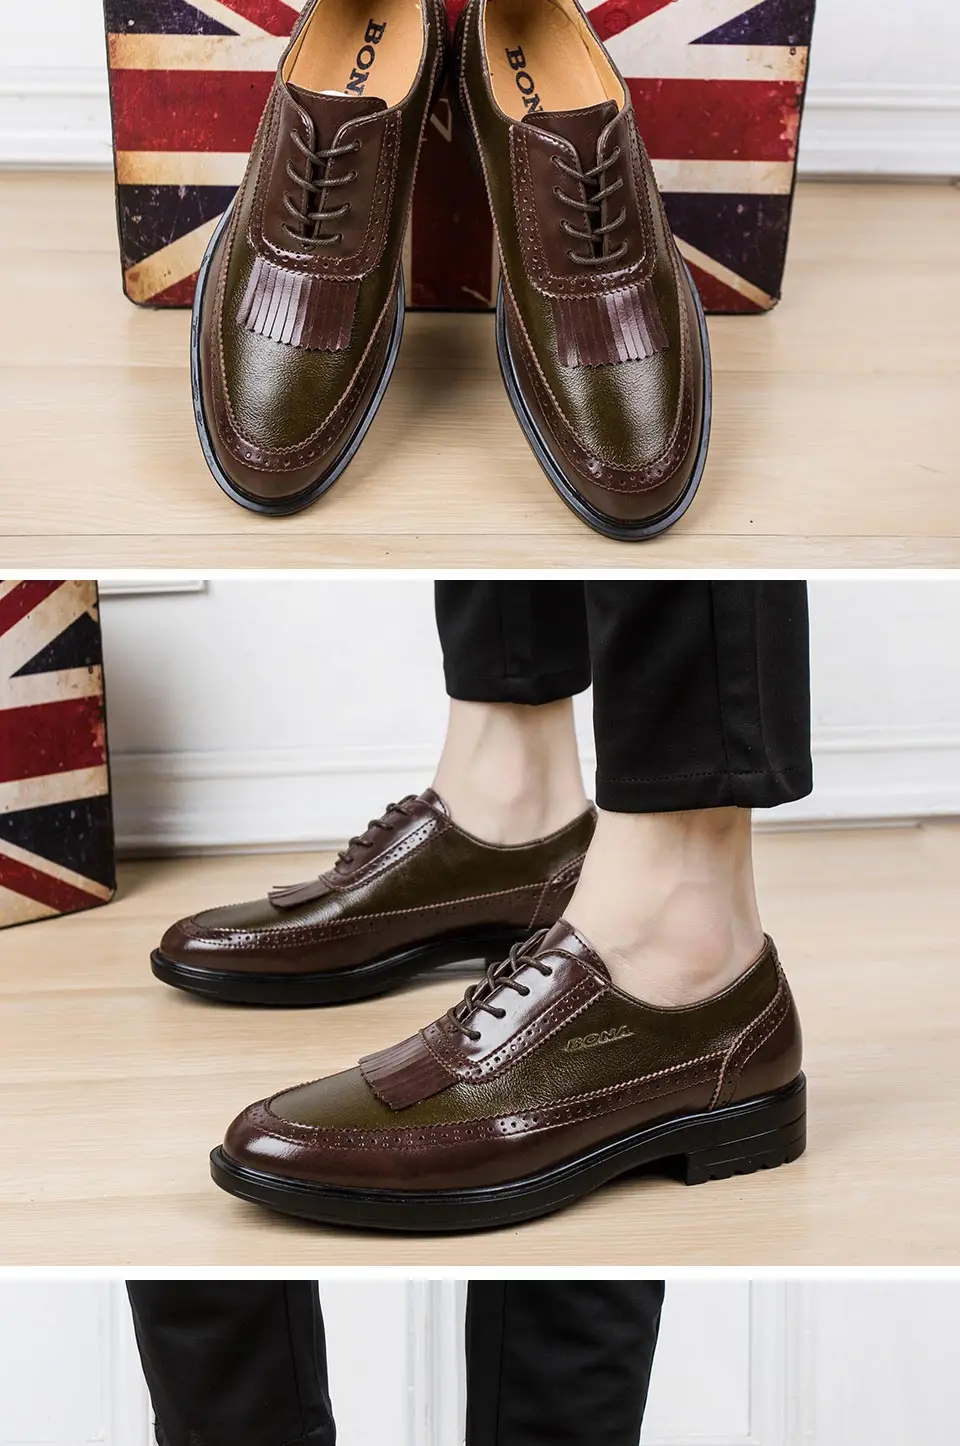 BONA/Новое поступление; Популярные стильные мужские официальные туфли; Мужские модельные туфли из натуральной кожи; мужские офисные туфли с круглым носком; Быстрая